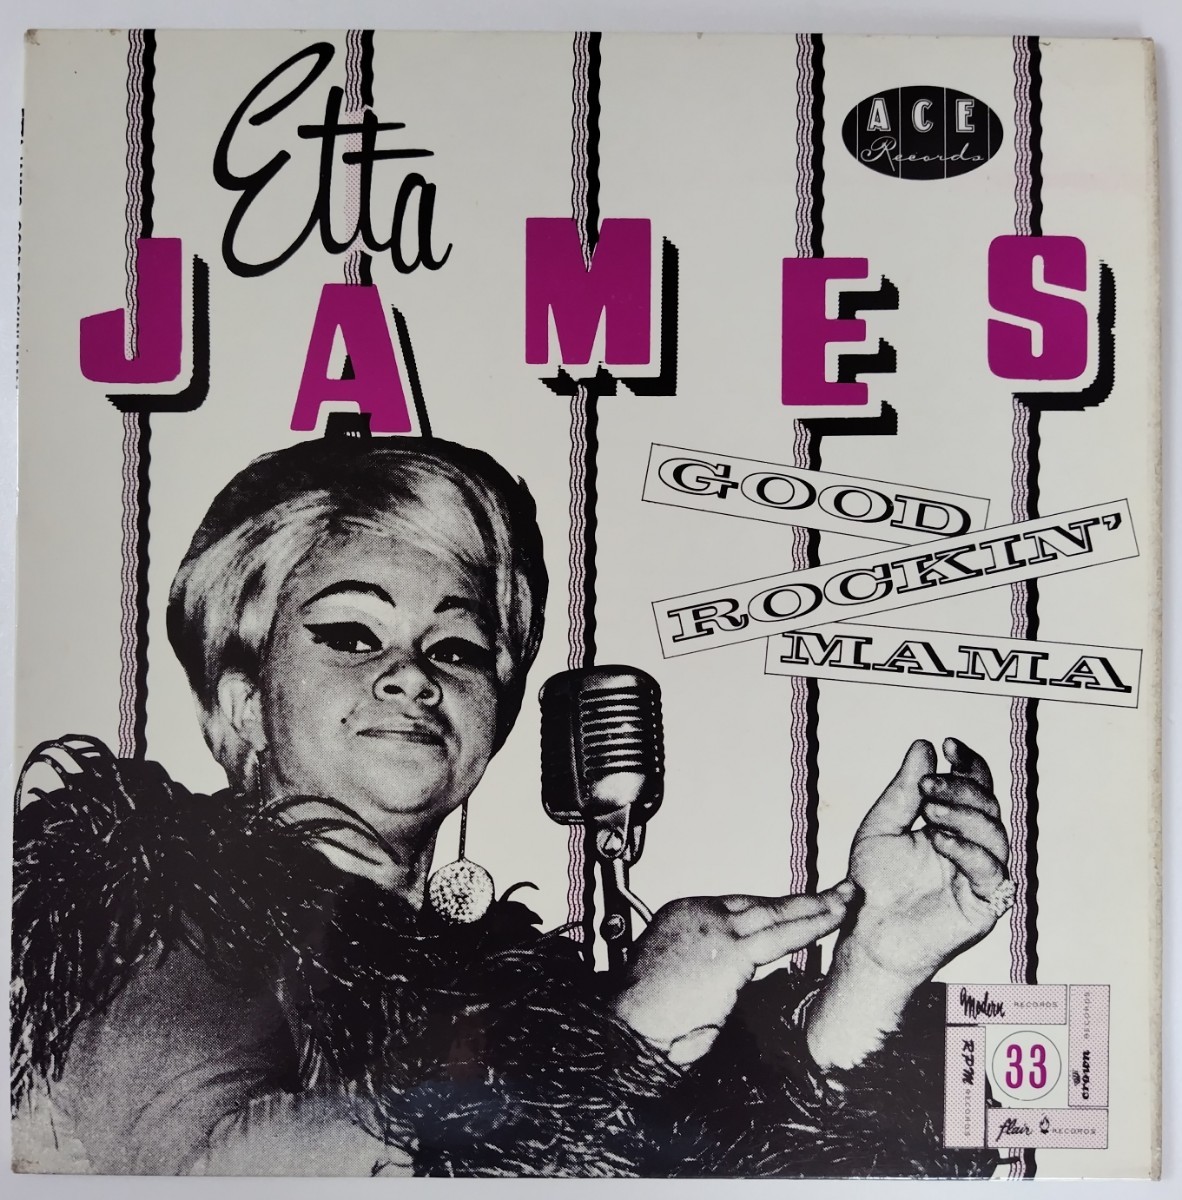 Etta James Good Rockin' Mama 25センチ アナログ盤 英国盤 モノラル Ace Recordsの画像1